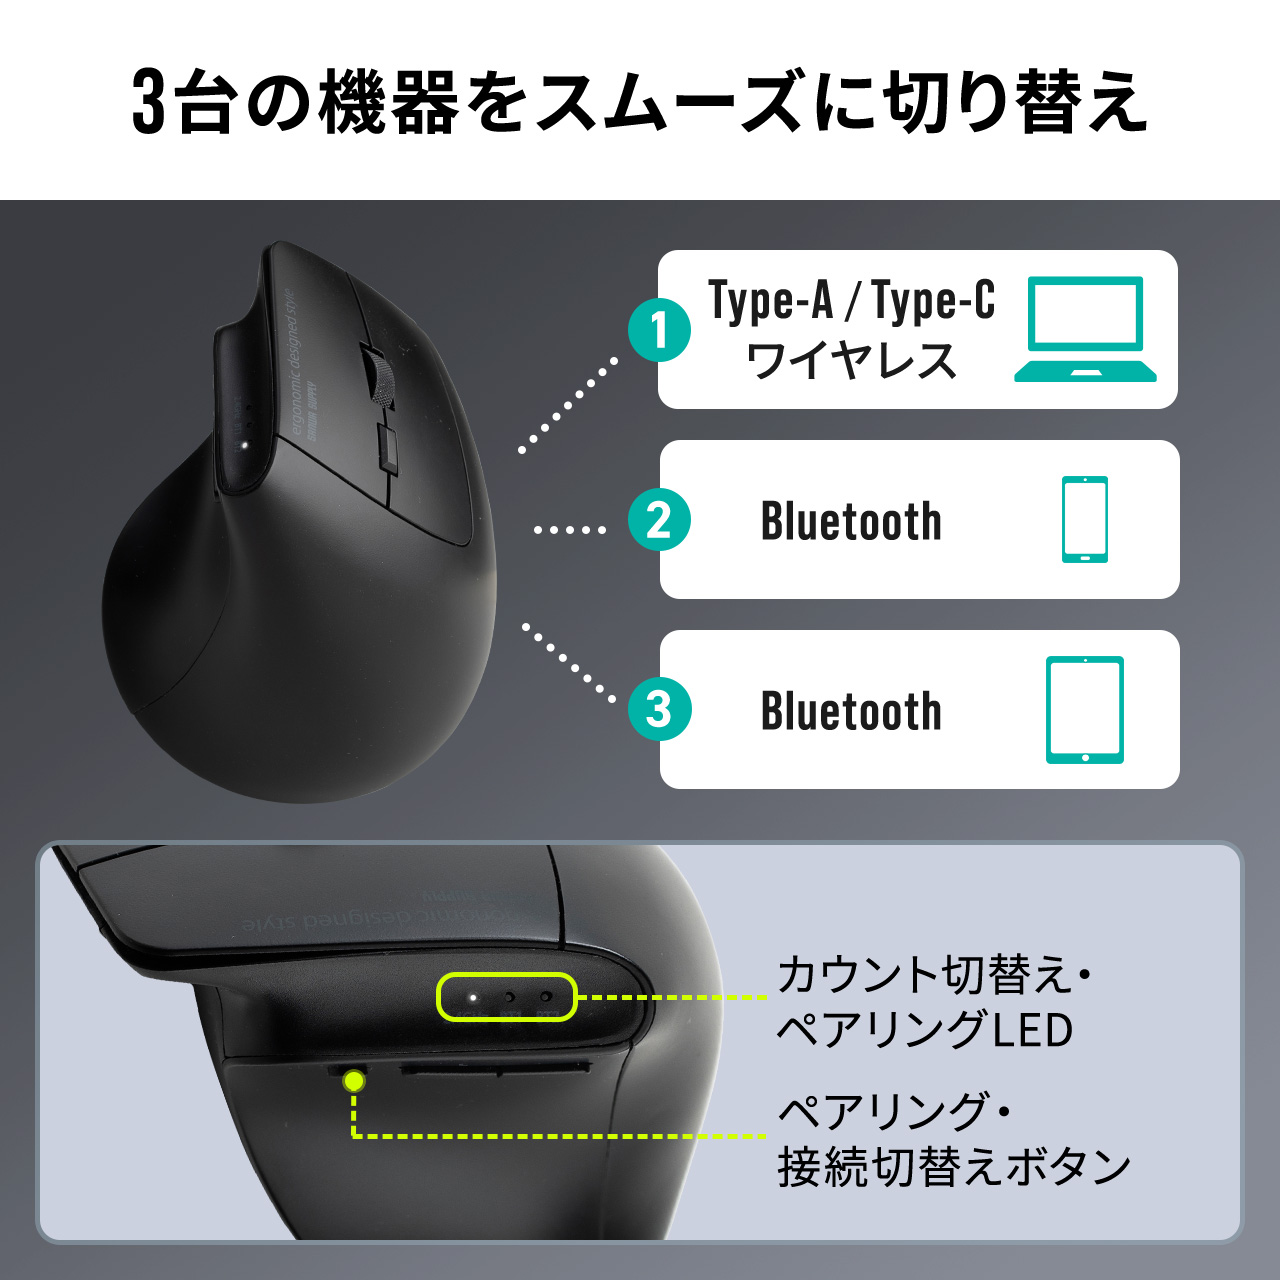 ワイヤレスマウス Bluetooth 2.4GHz 両対応 マルチペアリング 3台接続 無線 エルゴノミクス USB A Type-C レシーバー 5ボタン 戻る 進む 静音 電池式 レッド 400-MAWBT193R